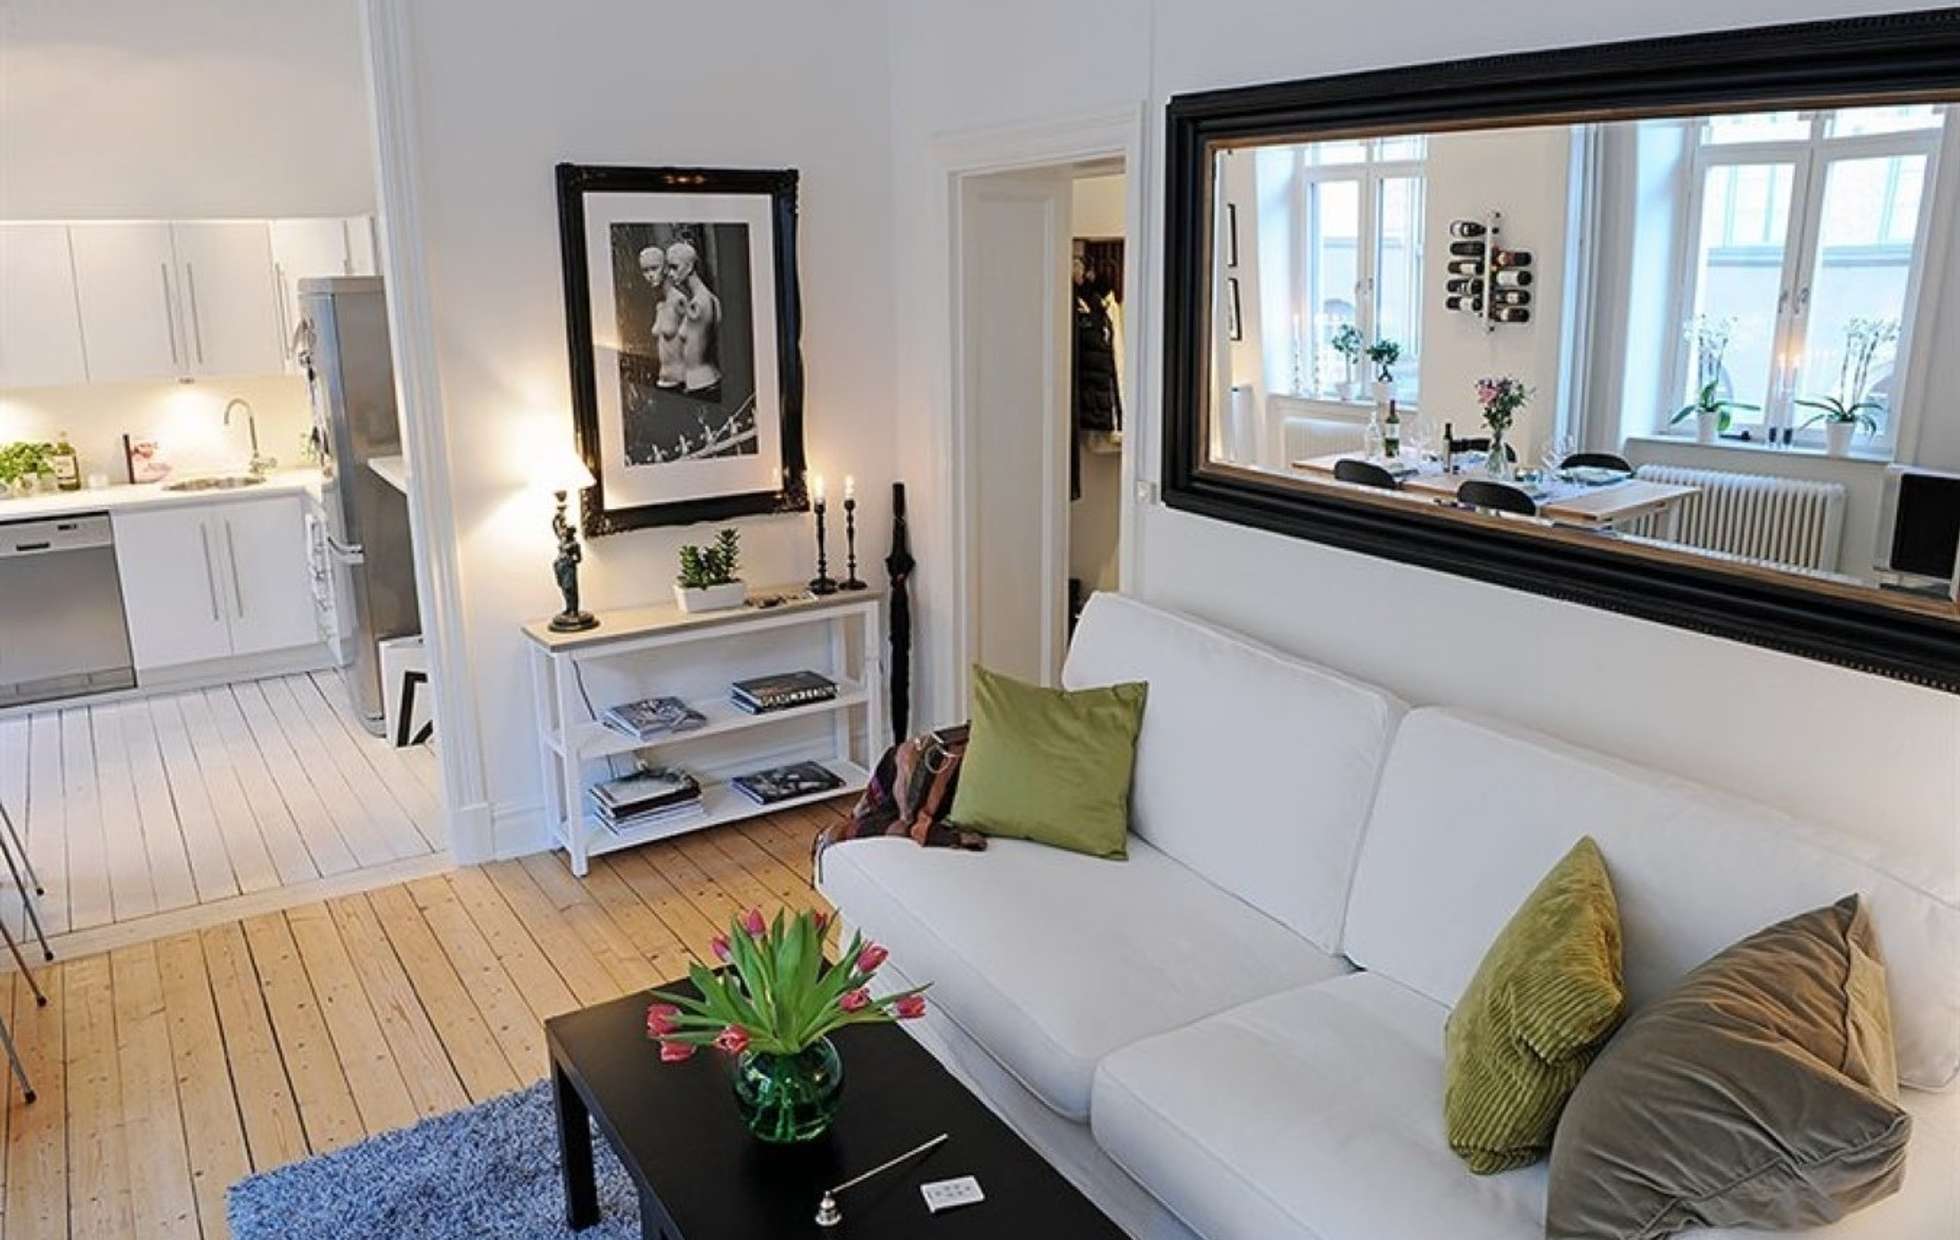 Дизайн из зазеркалья — Маленькие и большие Зеркала в интерьере квартиры (290+ фото)